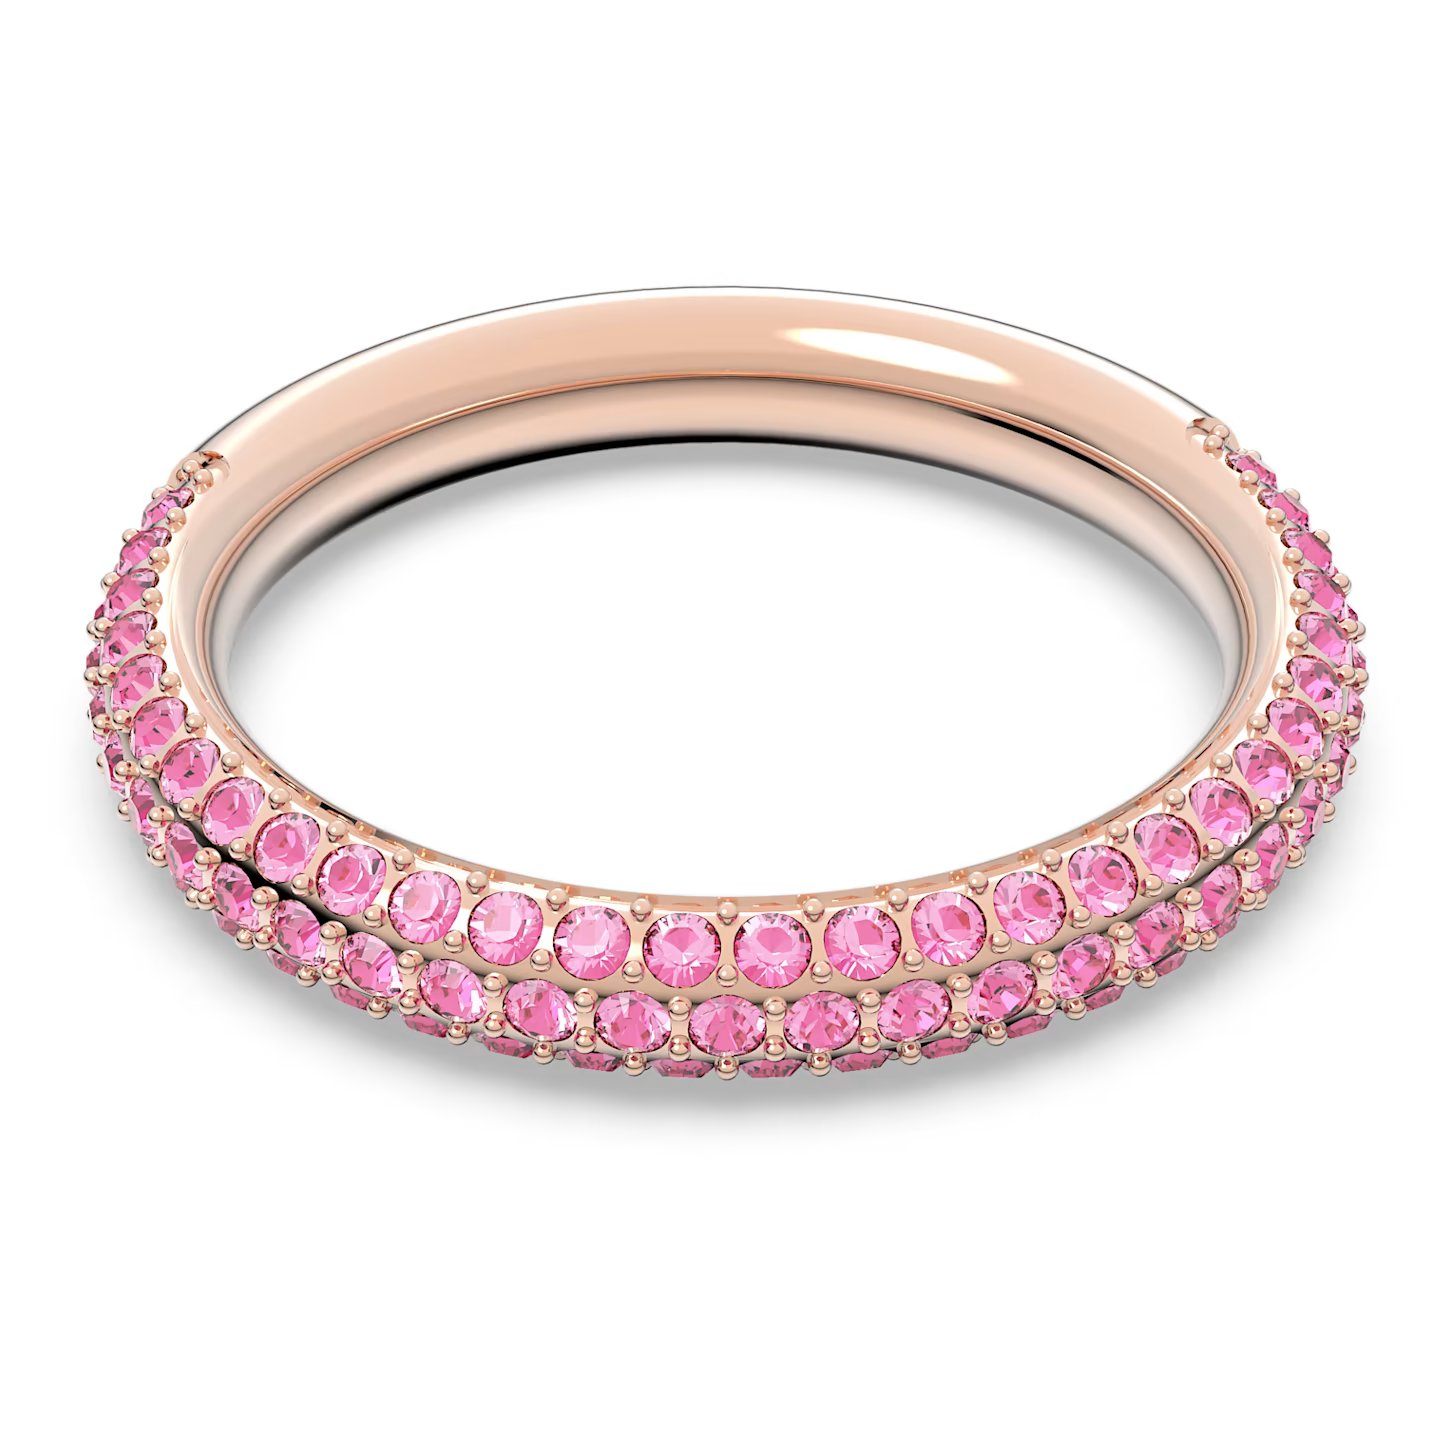 Swarovski -  Nádherný prsten s růžovými krystaly Swarovski -  Stone 5642910 52 mm